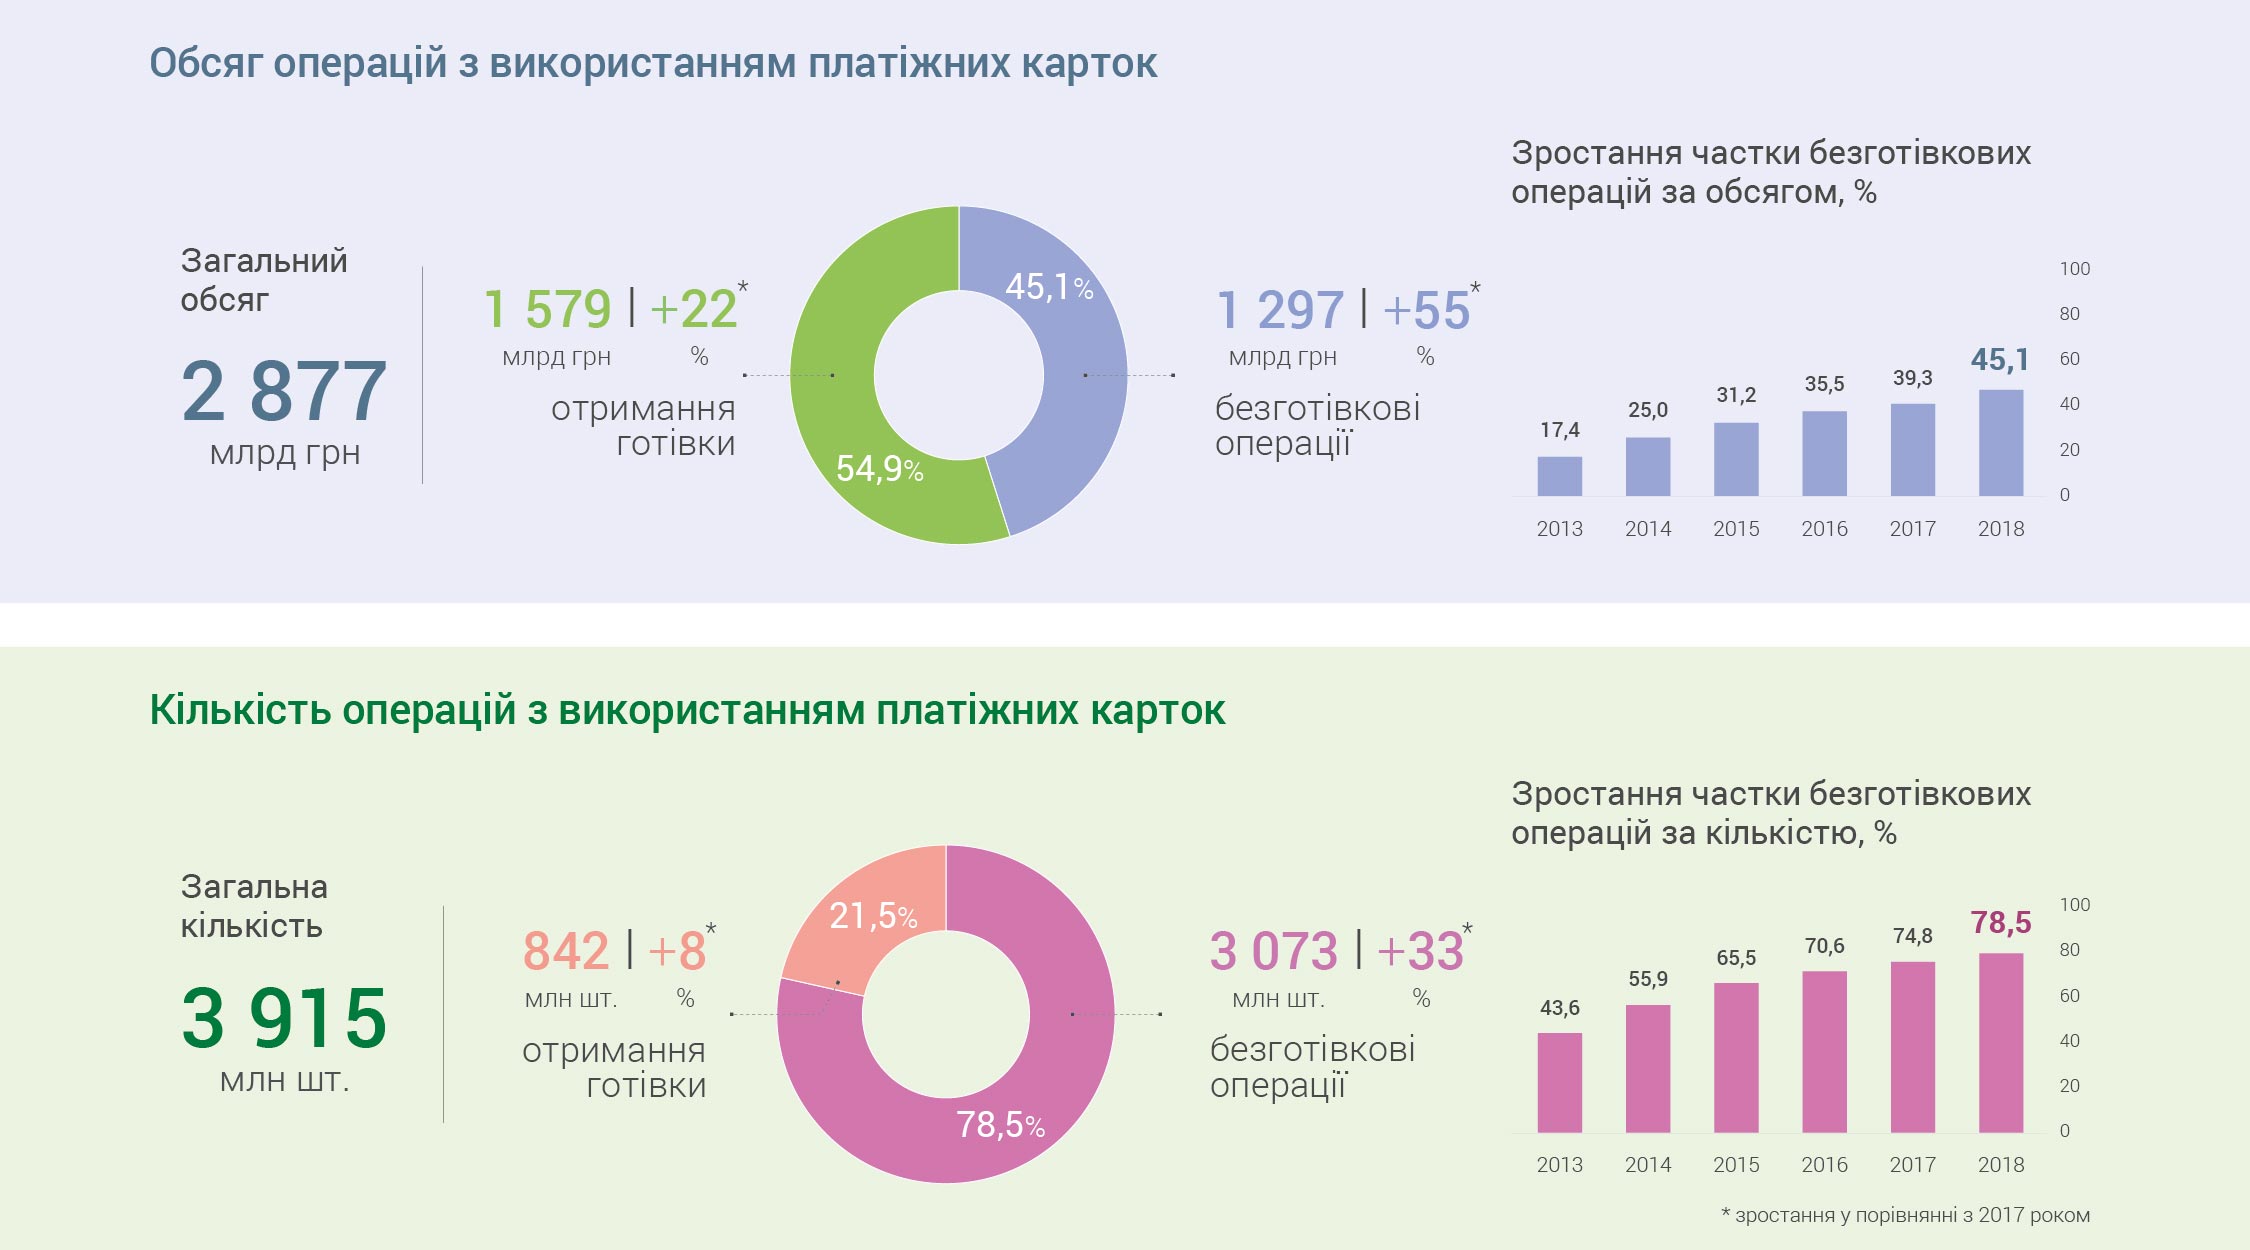 У 2018 році українці все частіше надавали перевагу безготівковим операціям